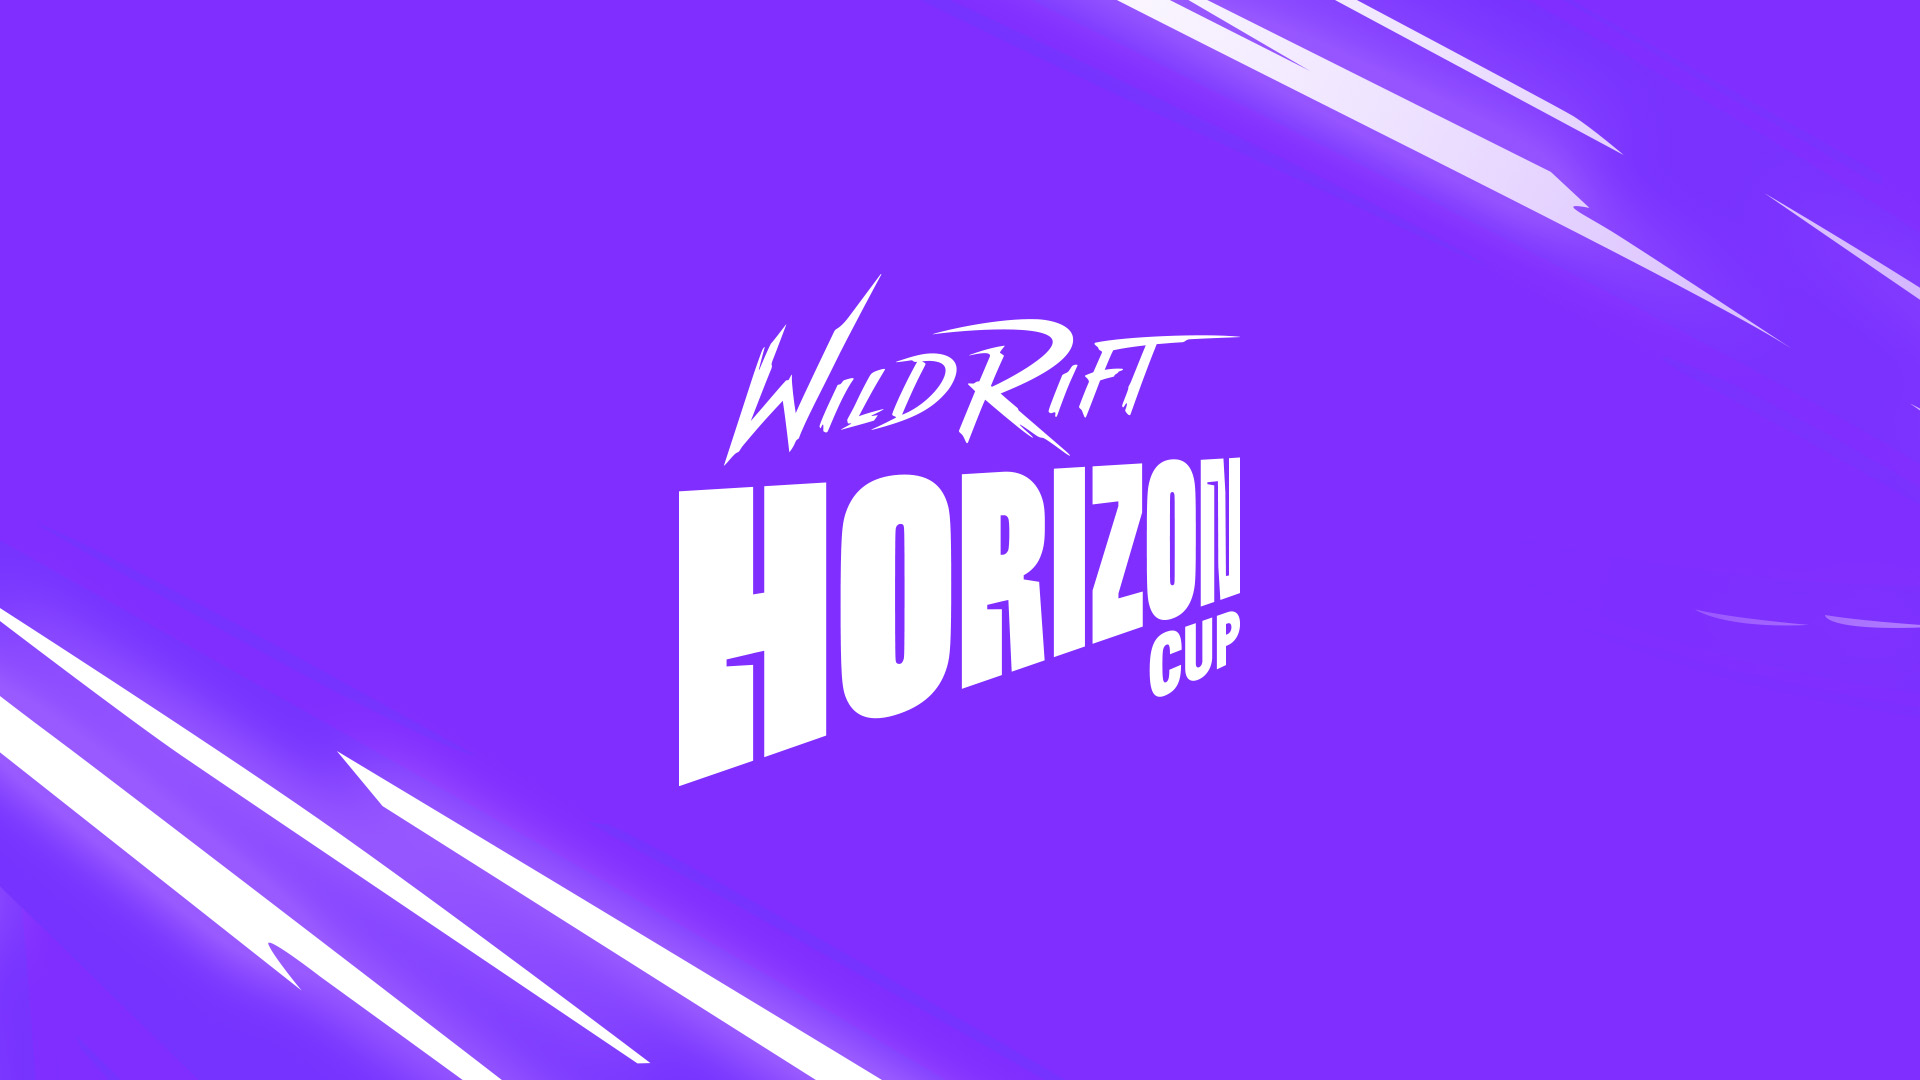 Wild Rift: Horizon Cup สรุปย่อเกี่ยวกับการแข่งขัน